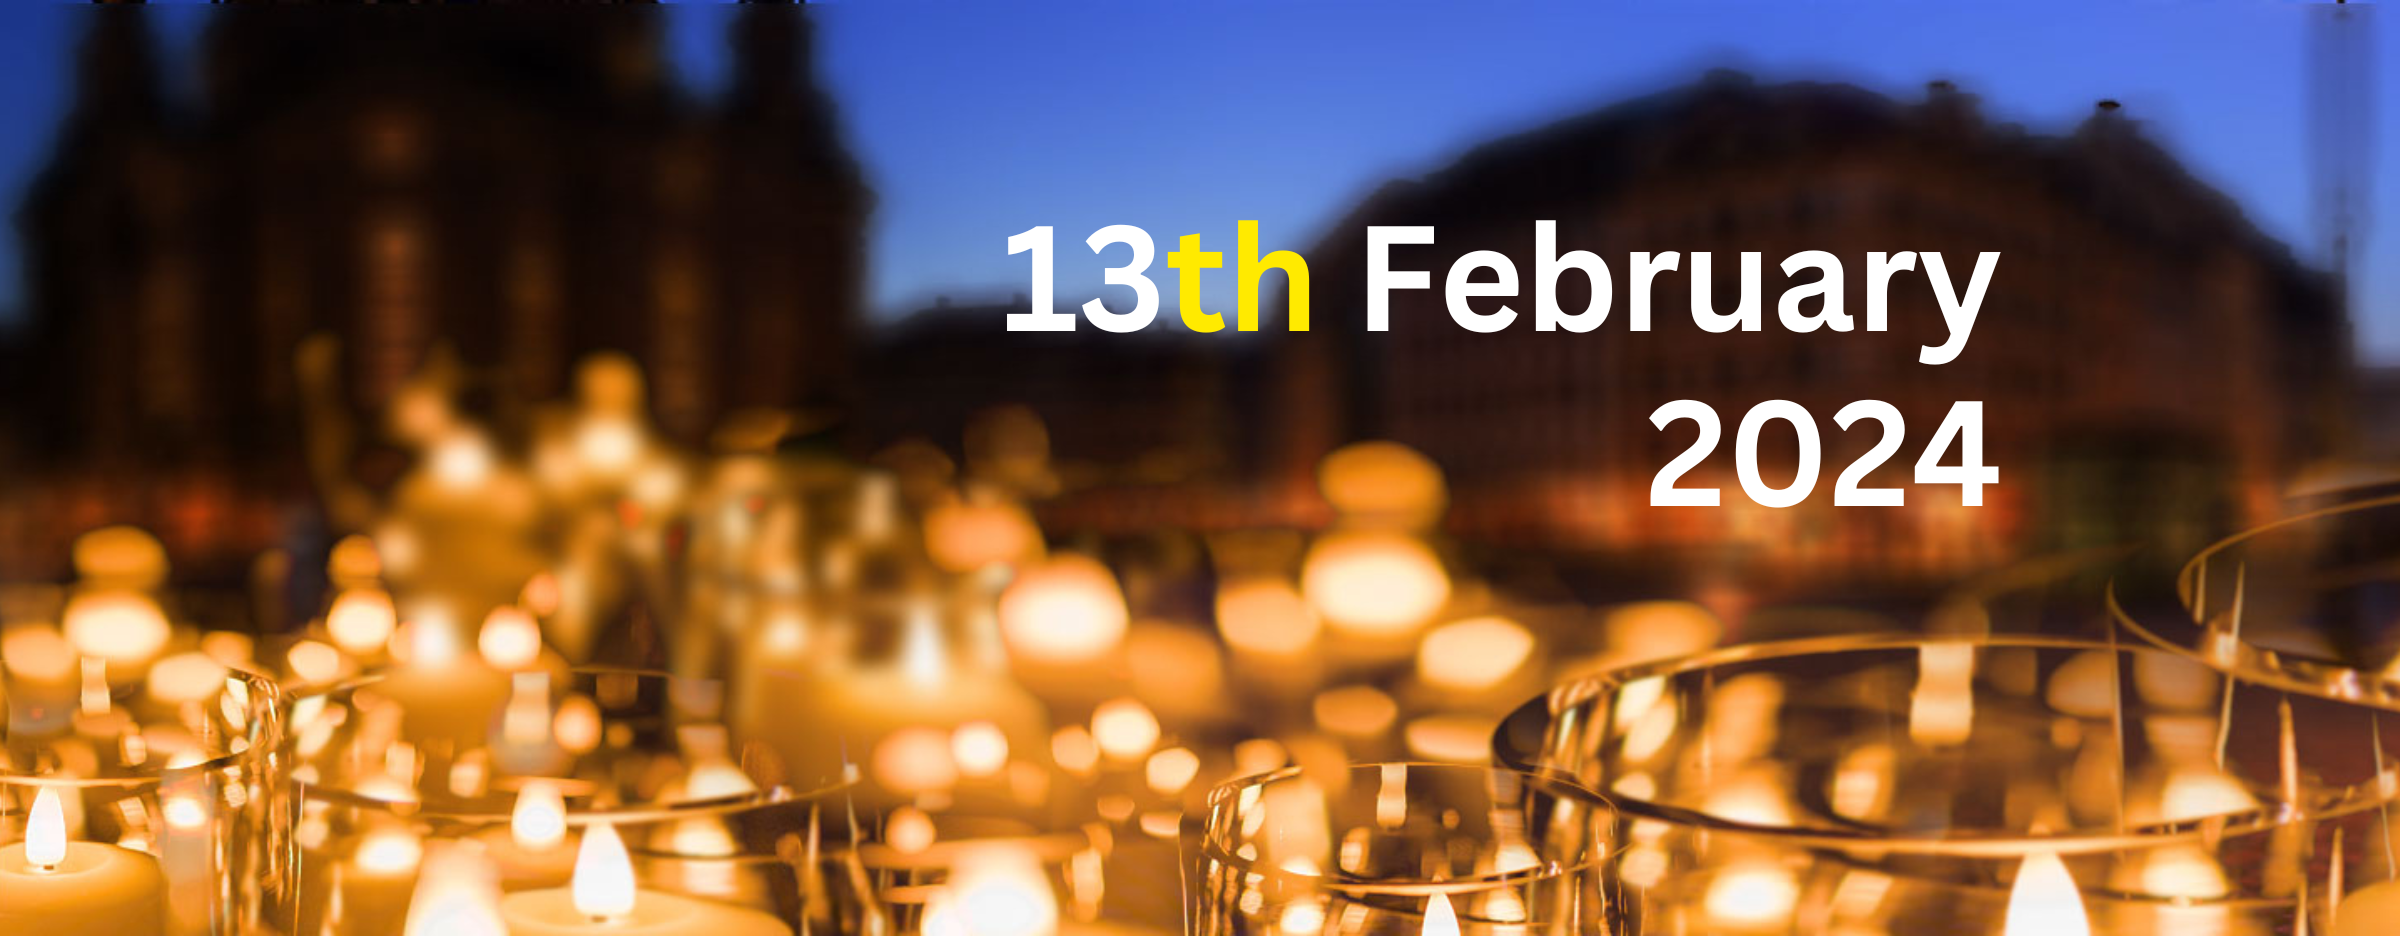 Viele Kerzen am 13. Februar in Dresden